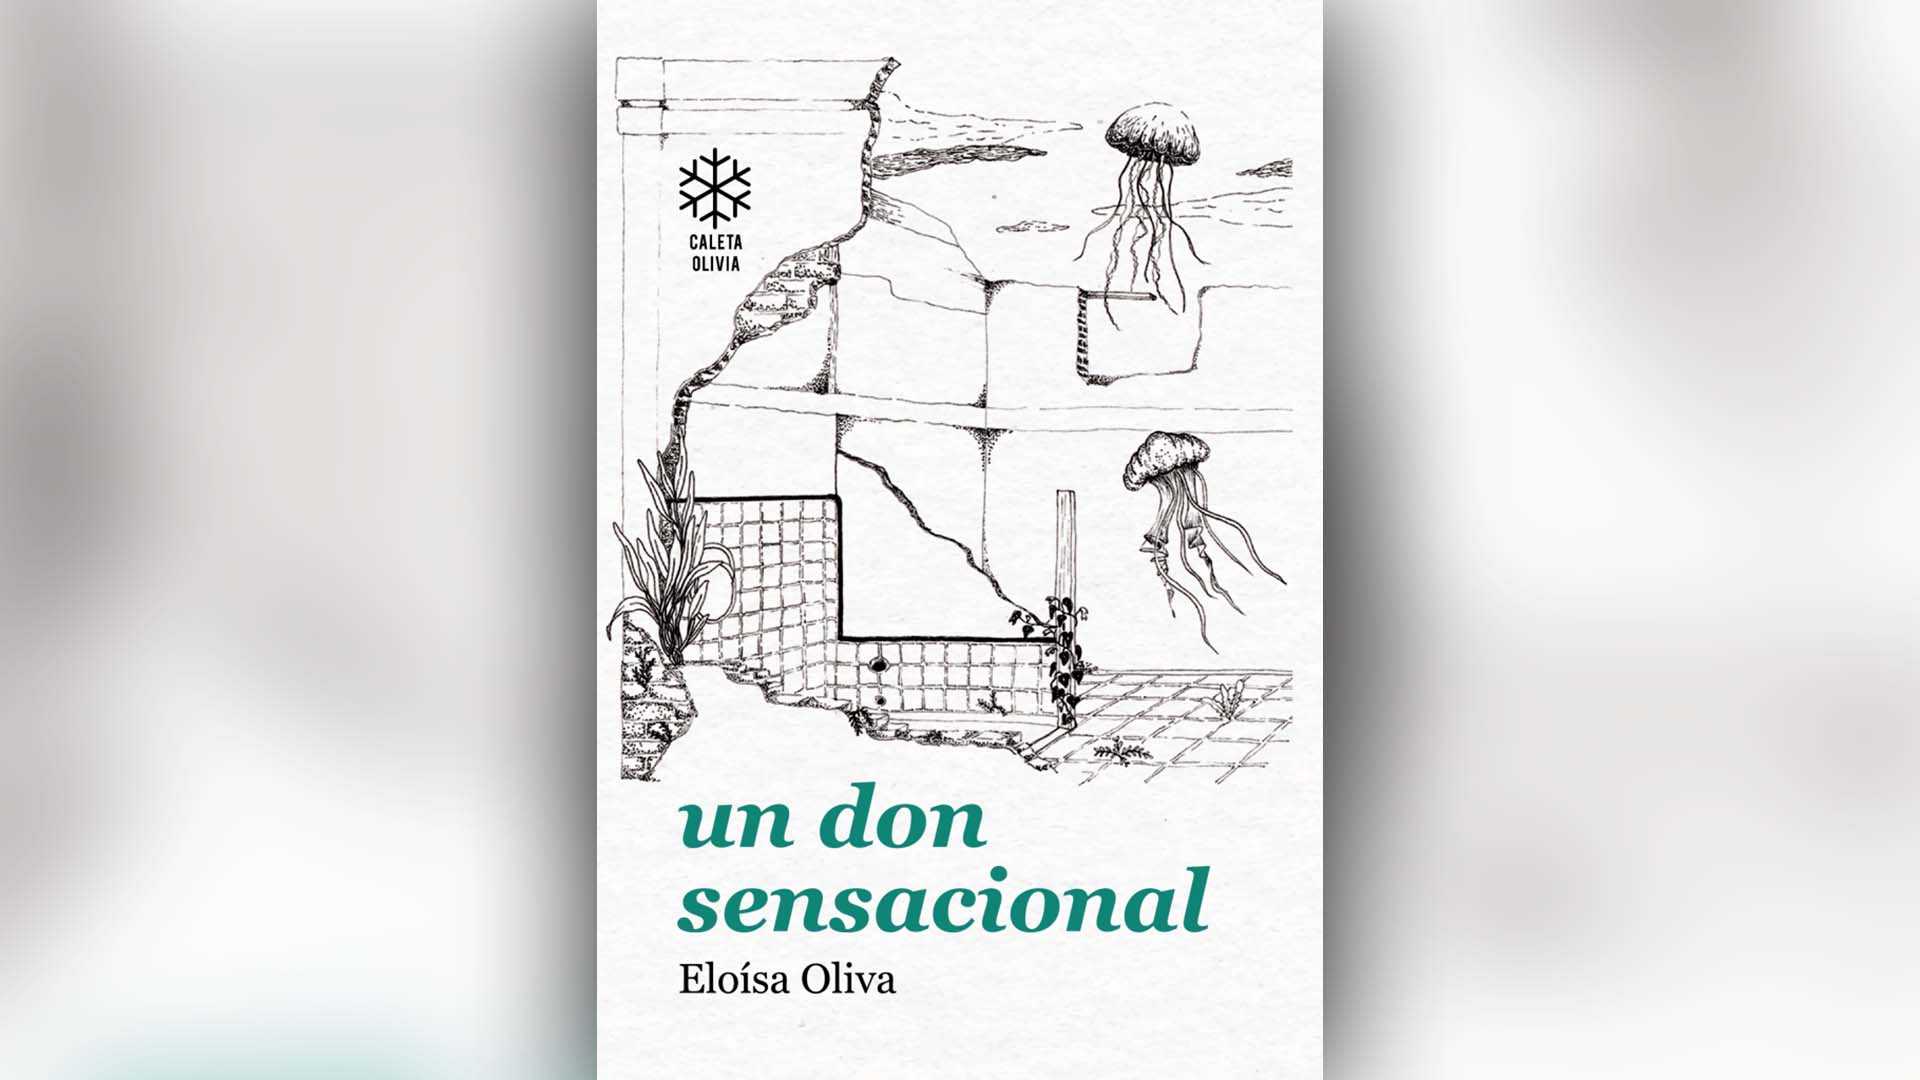 Eloísa Oliva pone poesía y prosa en su obra.